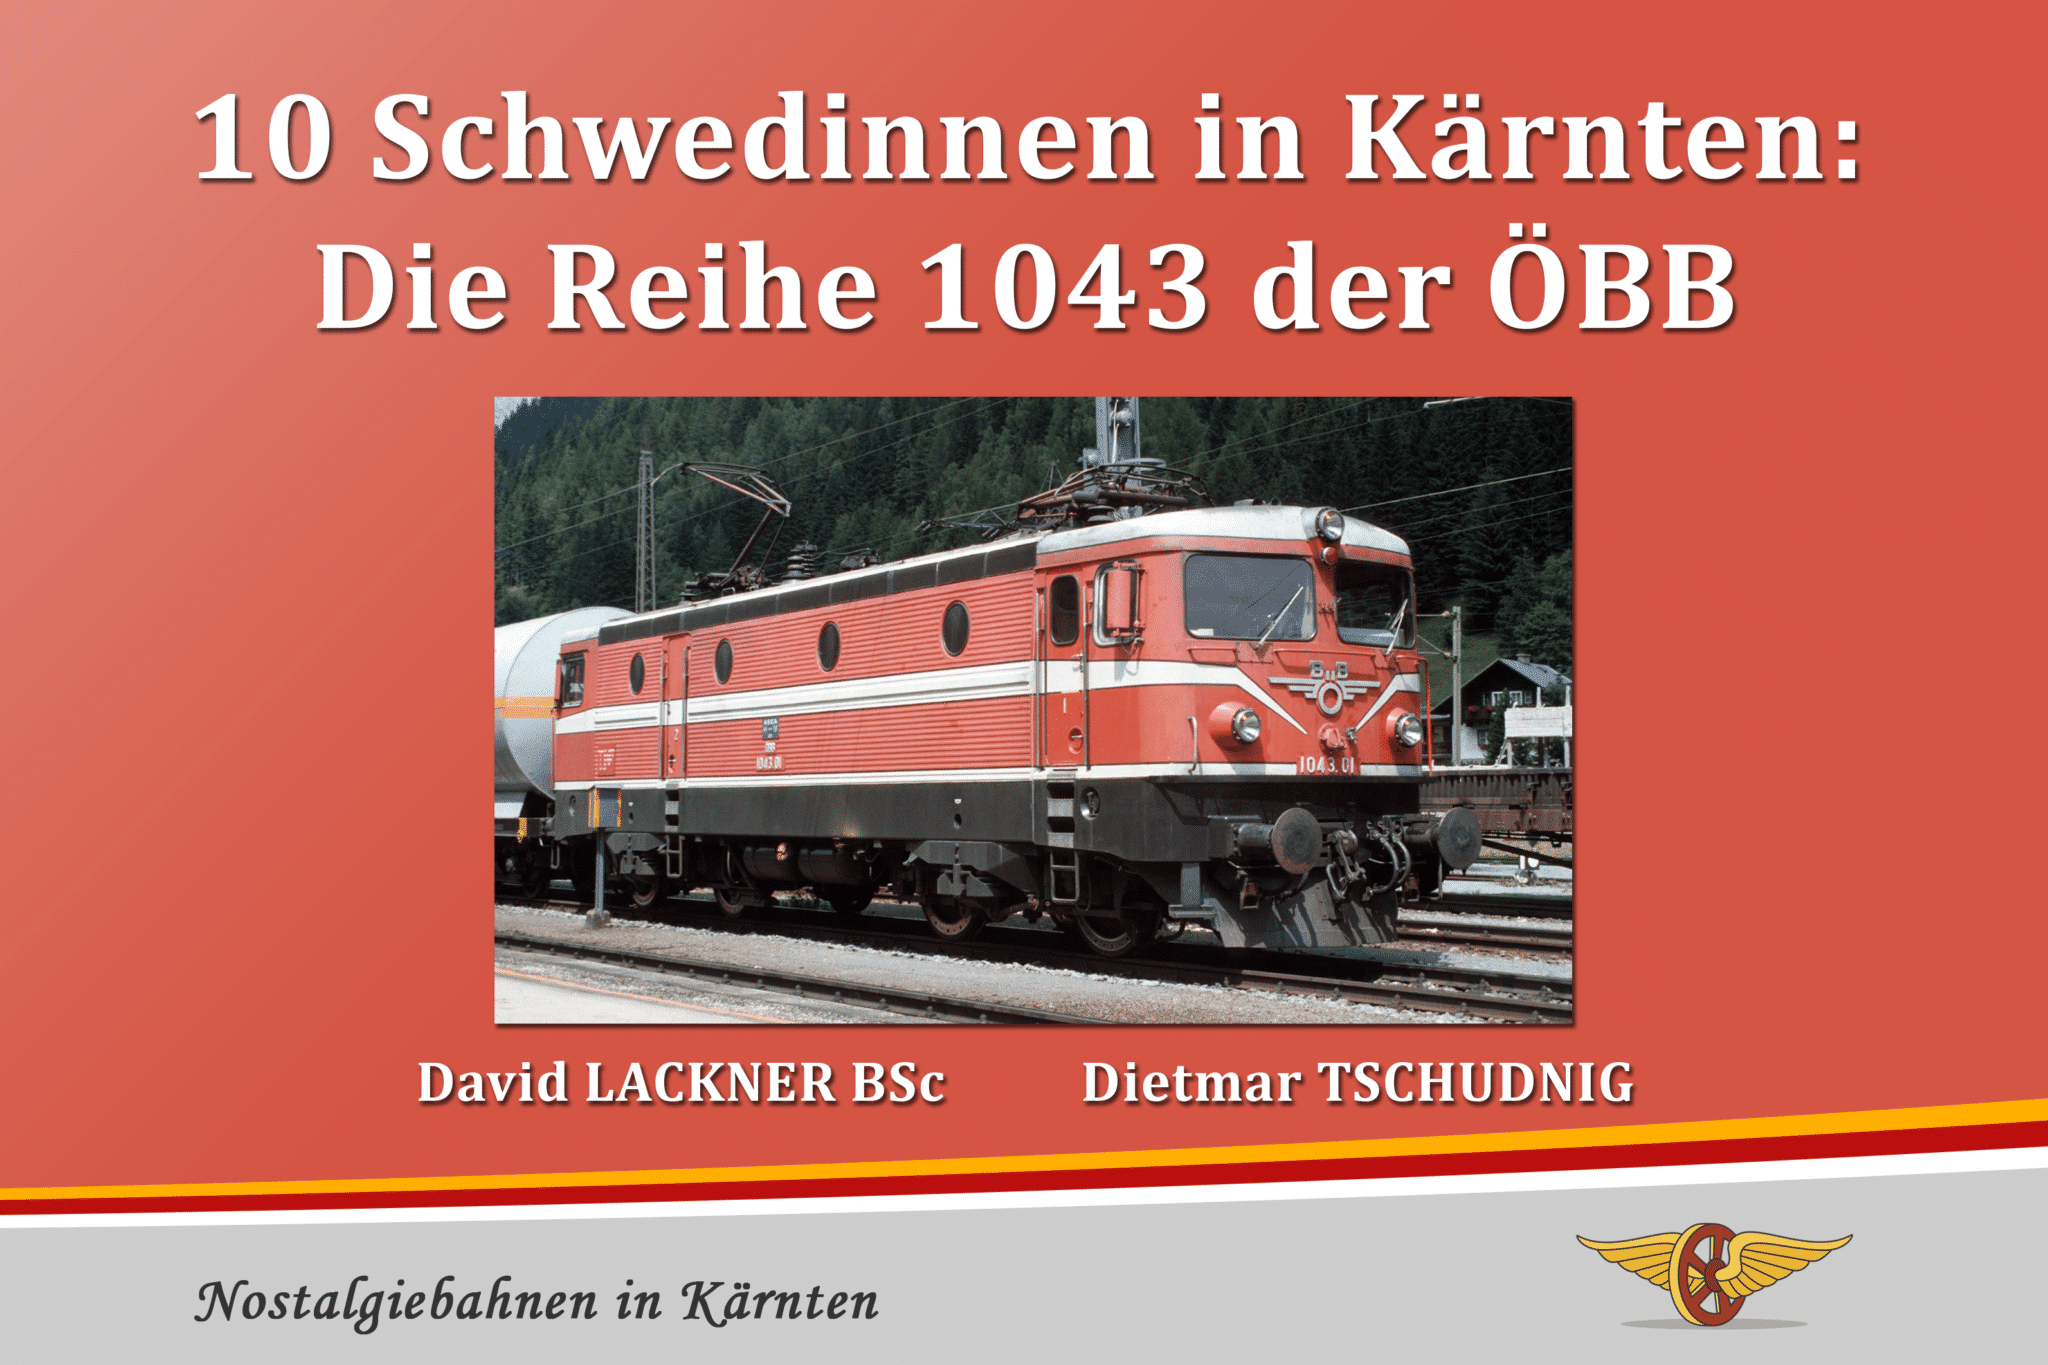 Tschudnig und Lackner verfassten einen Bildband über die Lokomotiven.